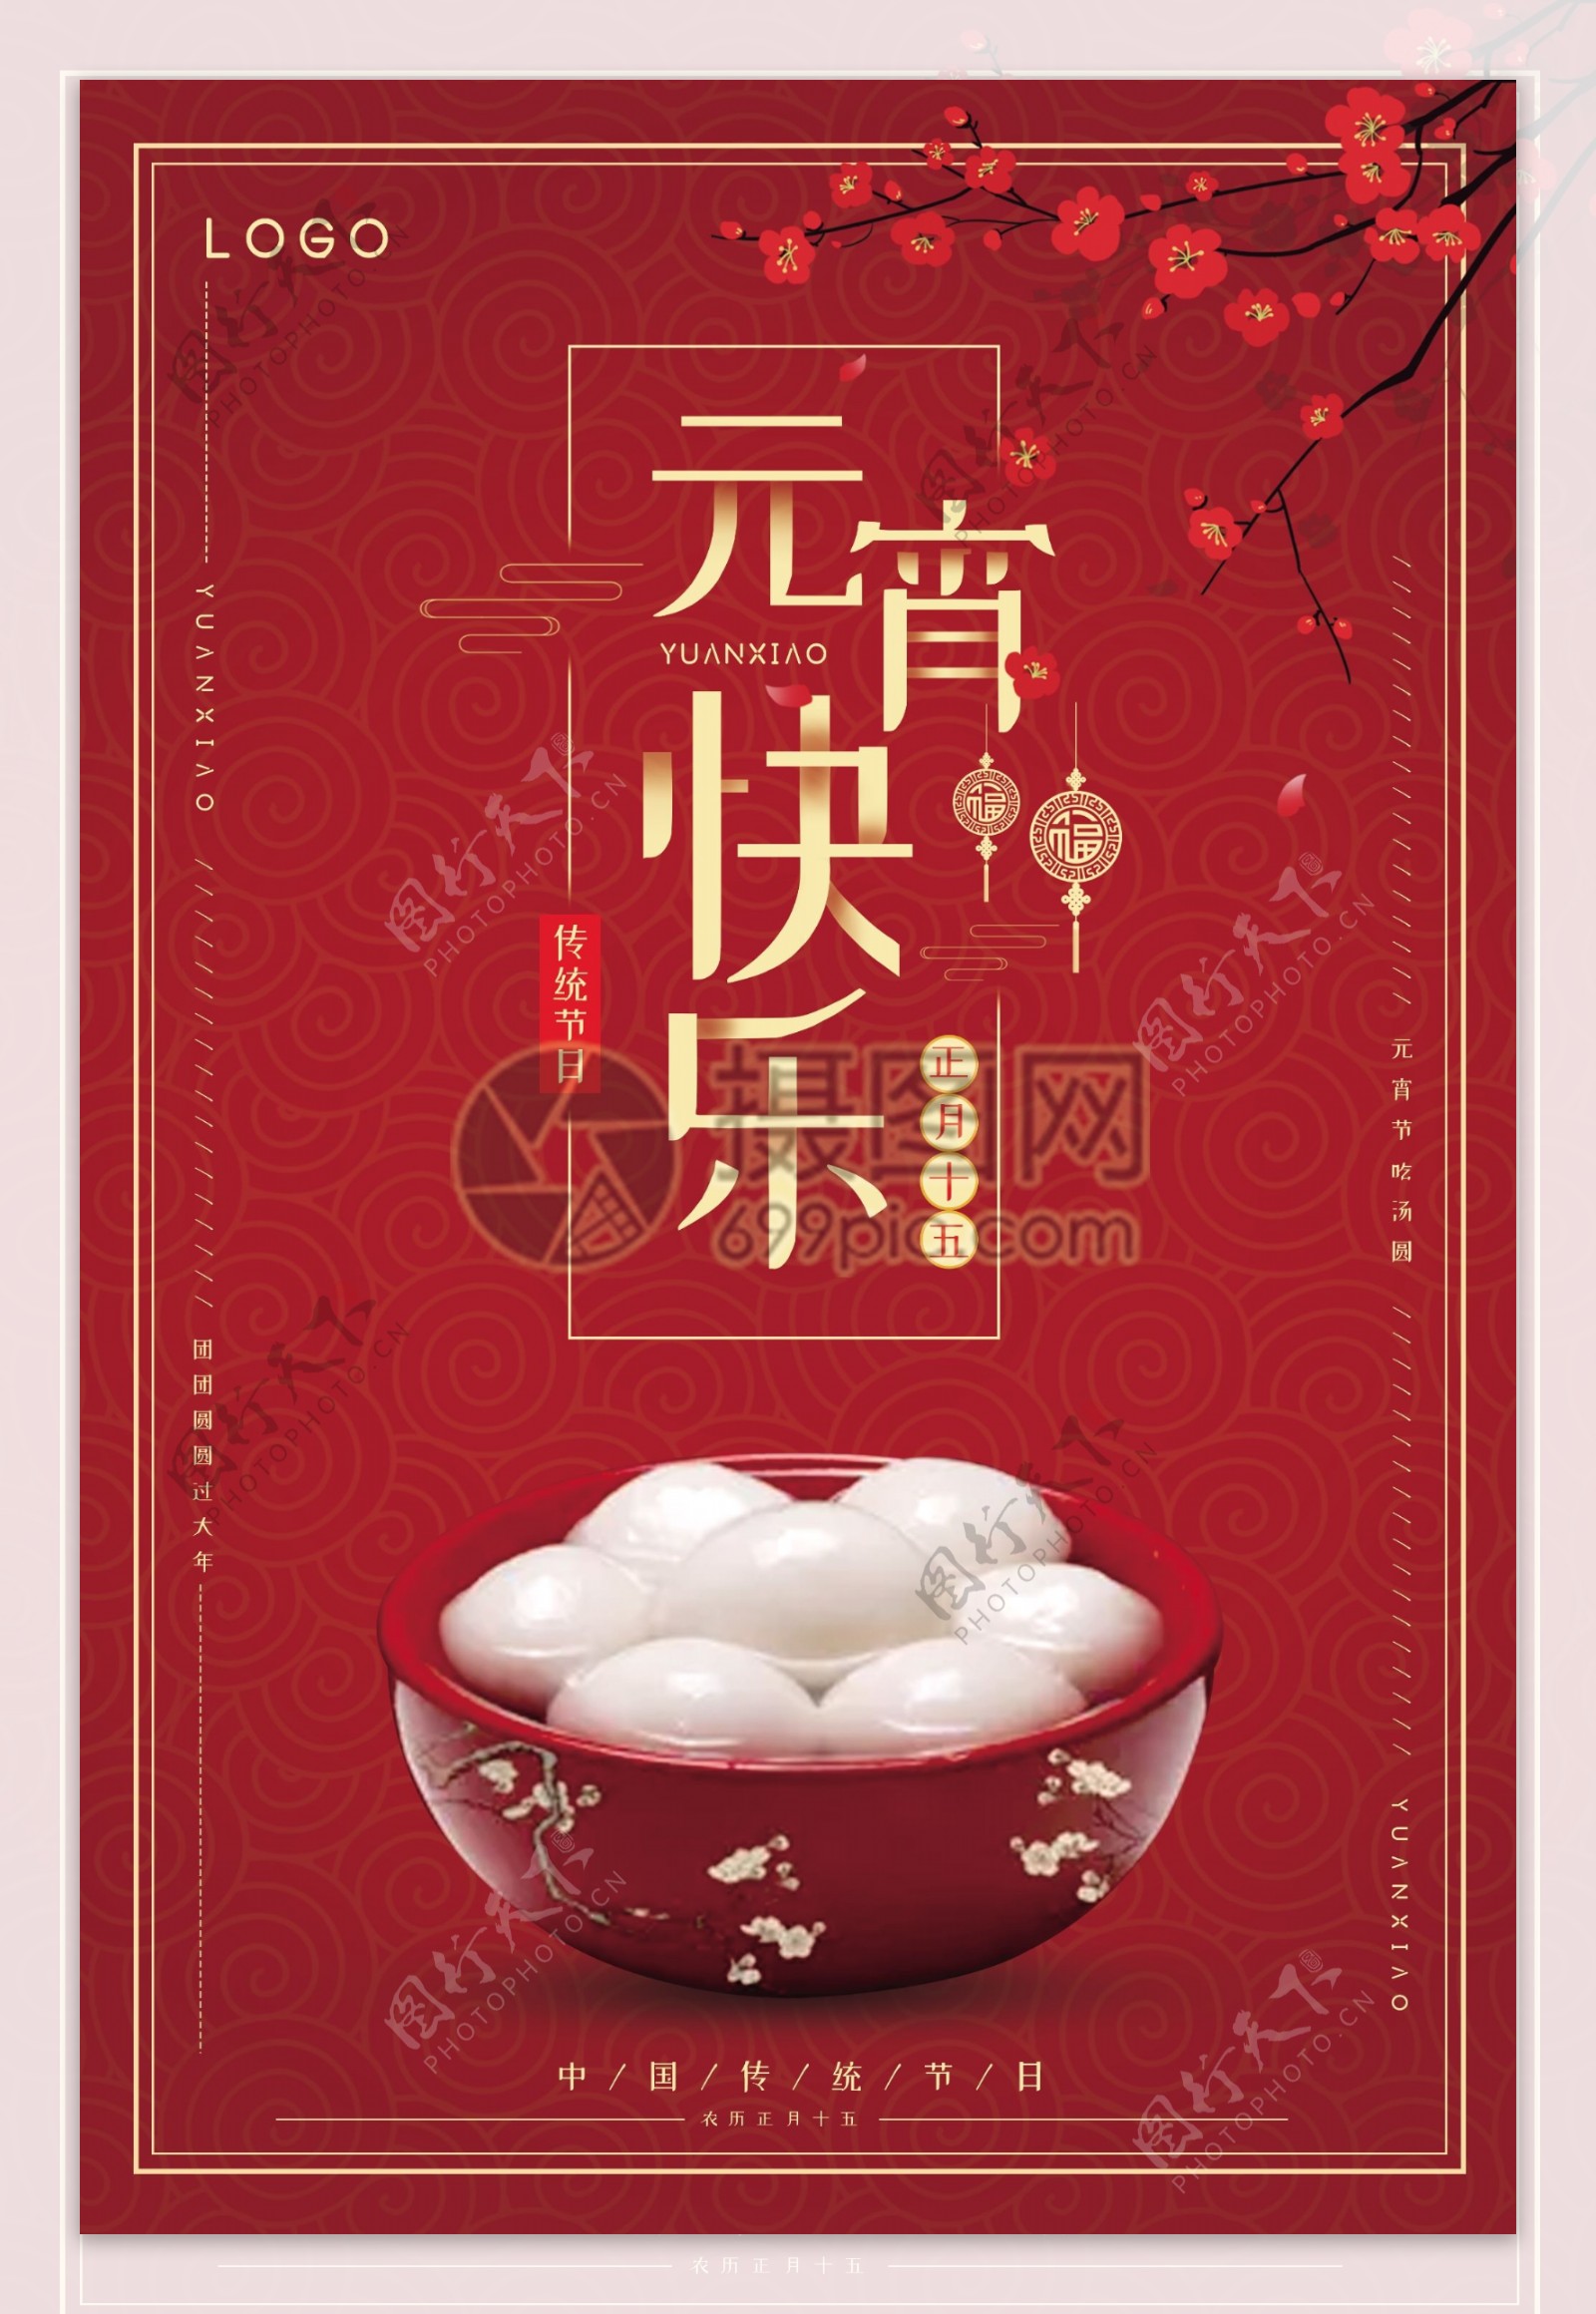 红色中国风元宵节快乐节日海报